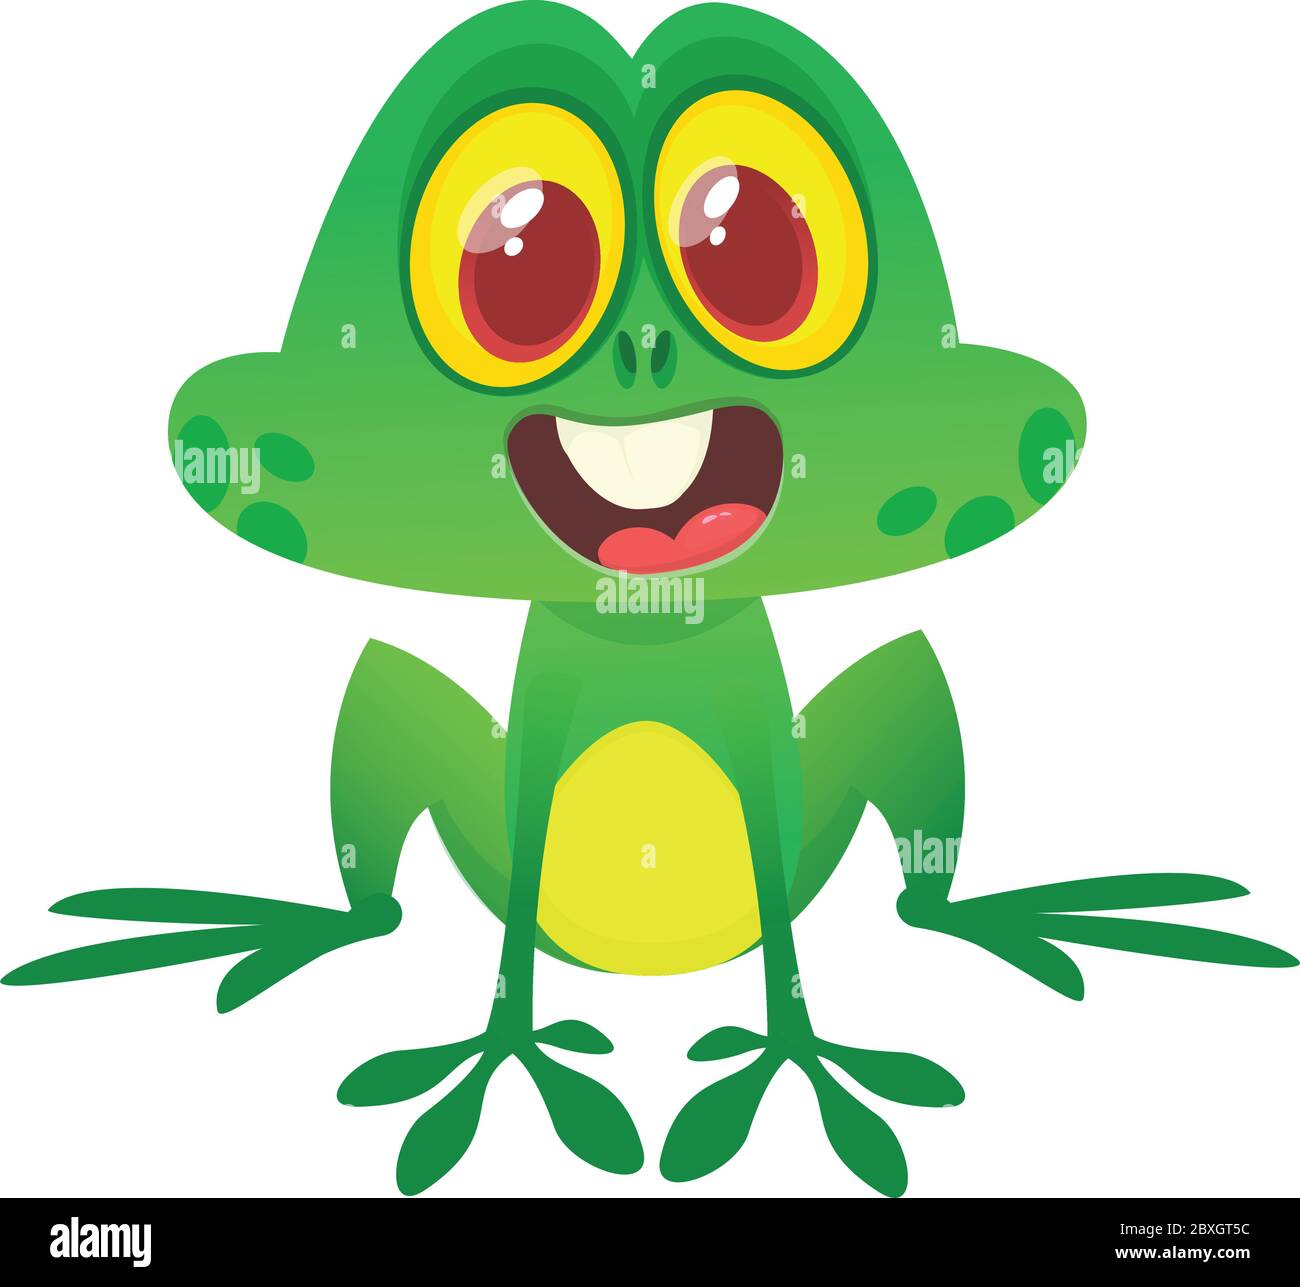 Divertente personaggio verde rana in stile cartoon. Illustrazione vettoriale. Design per stampa, illustrazione di libri per bambini o decorazione di feste Illustrazione Vettoriale